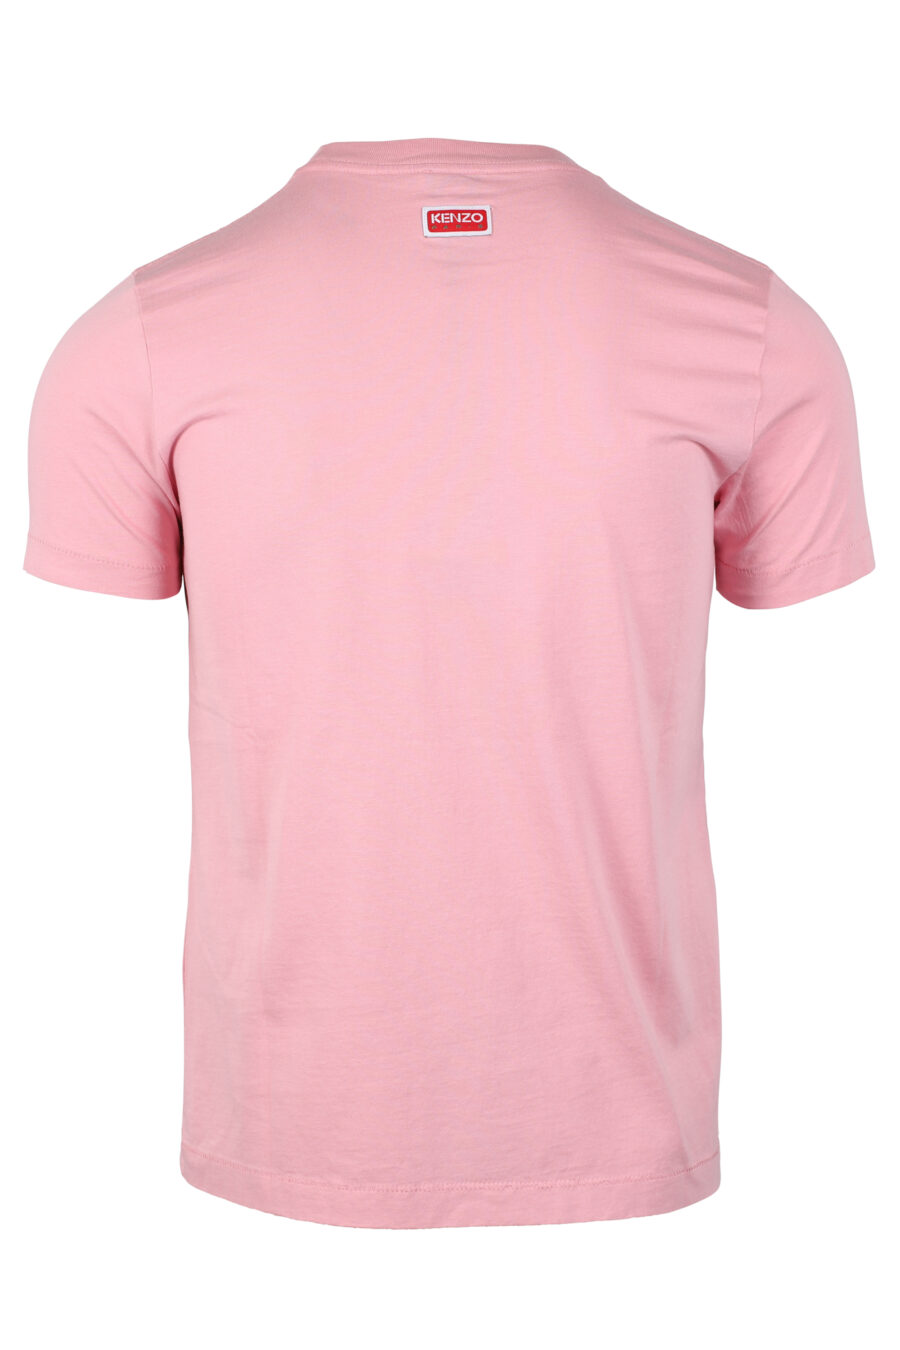 T-shirt cor-de-rosa com maxilogo de flores cor de laranja - IMG 4640